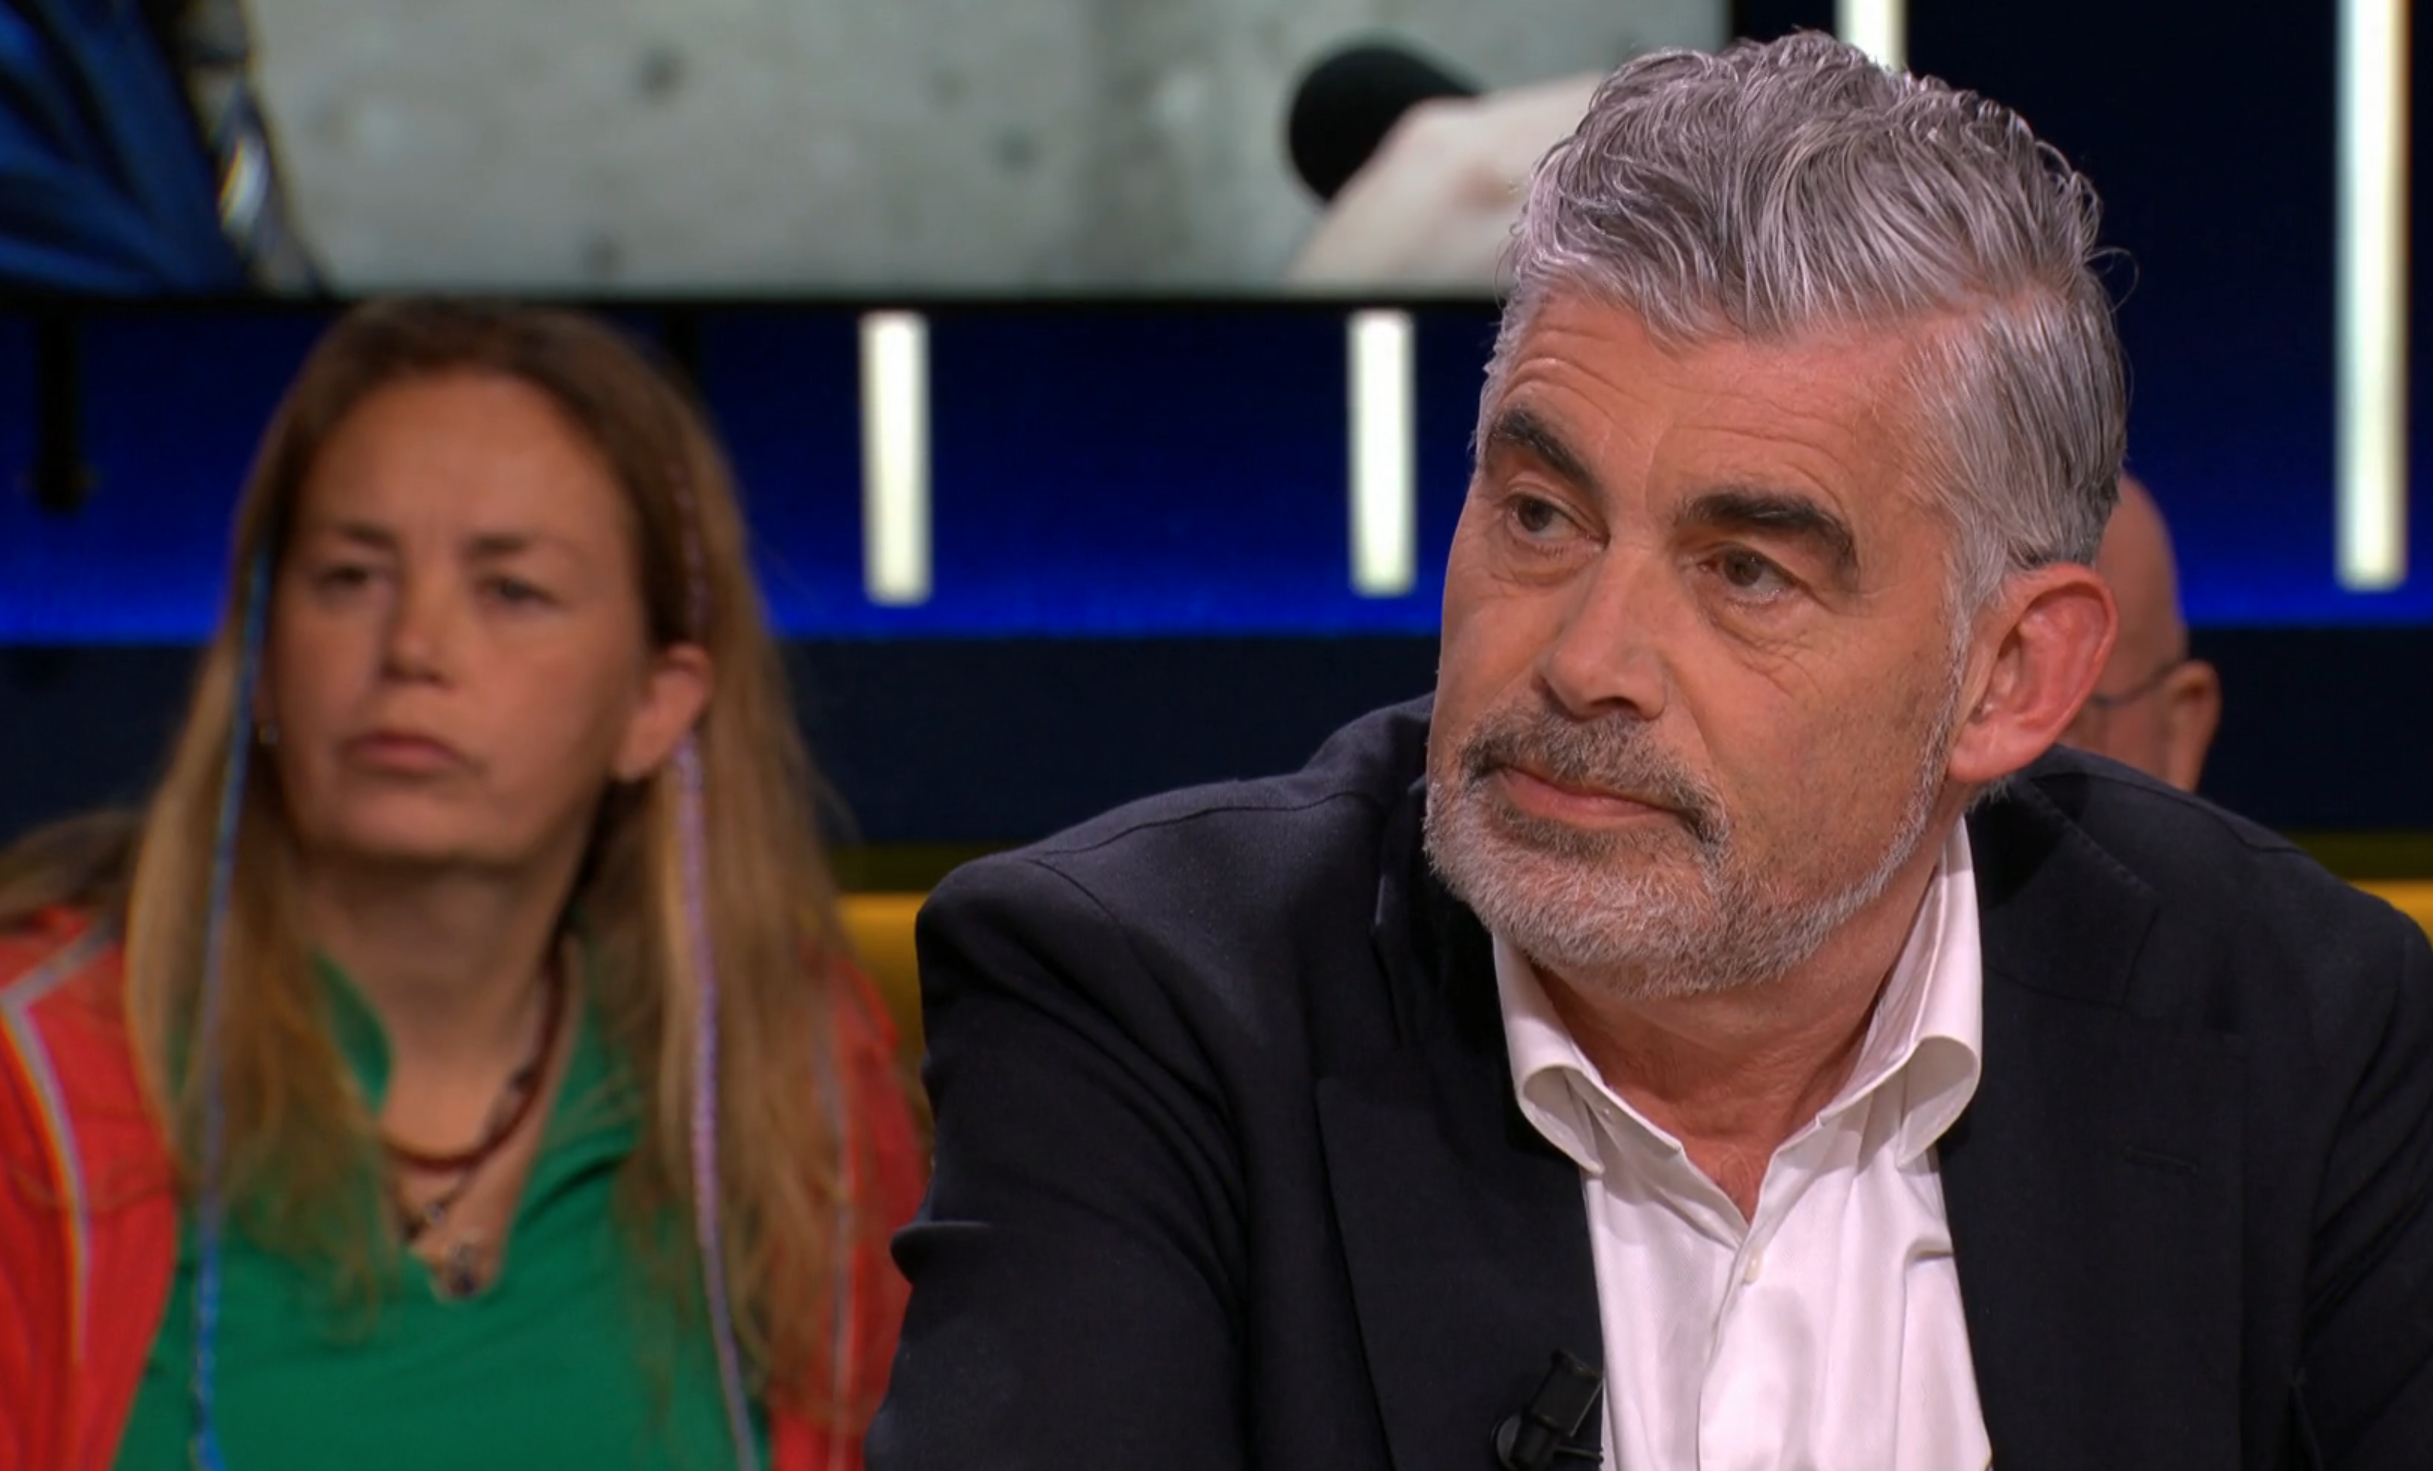 huisarts Rob Oudkerk Thierry Baudet Op1 drugs